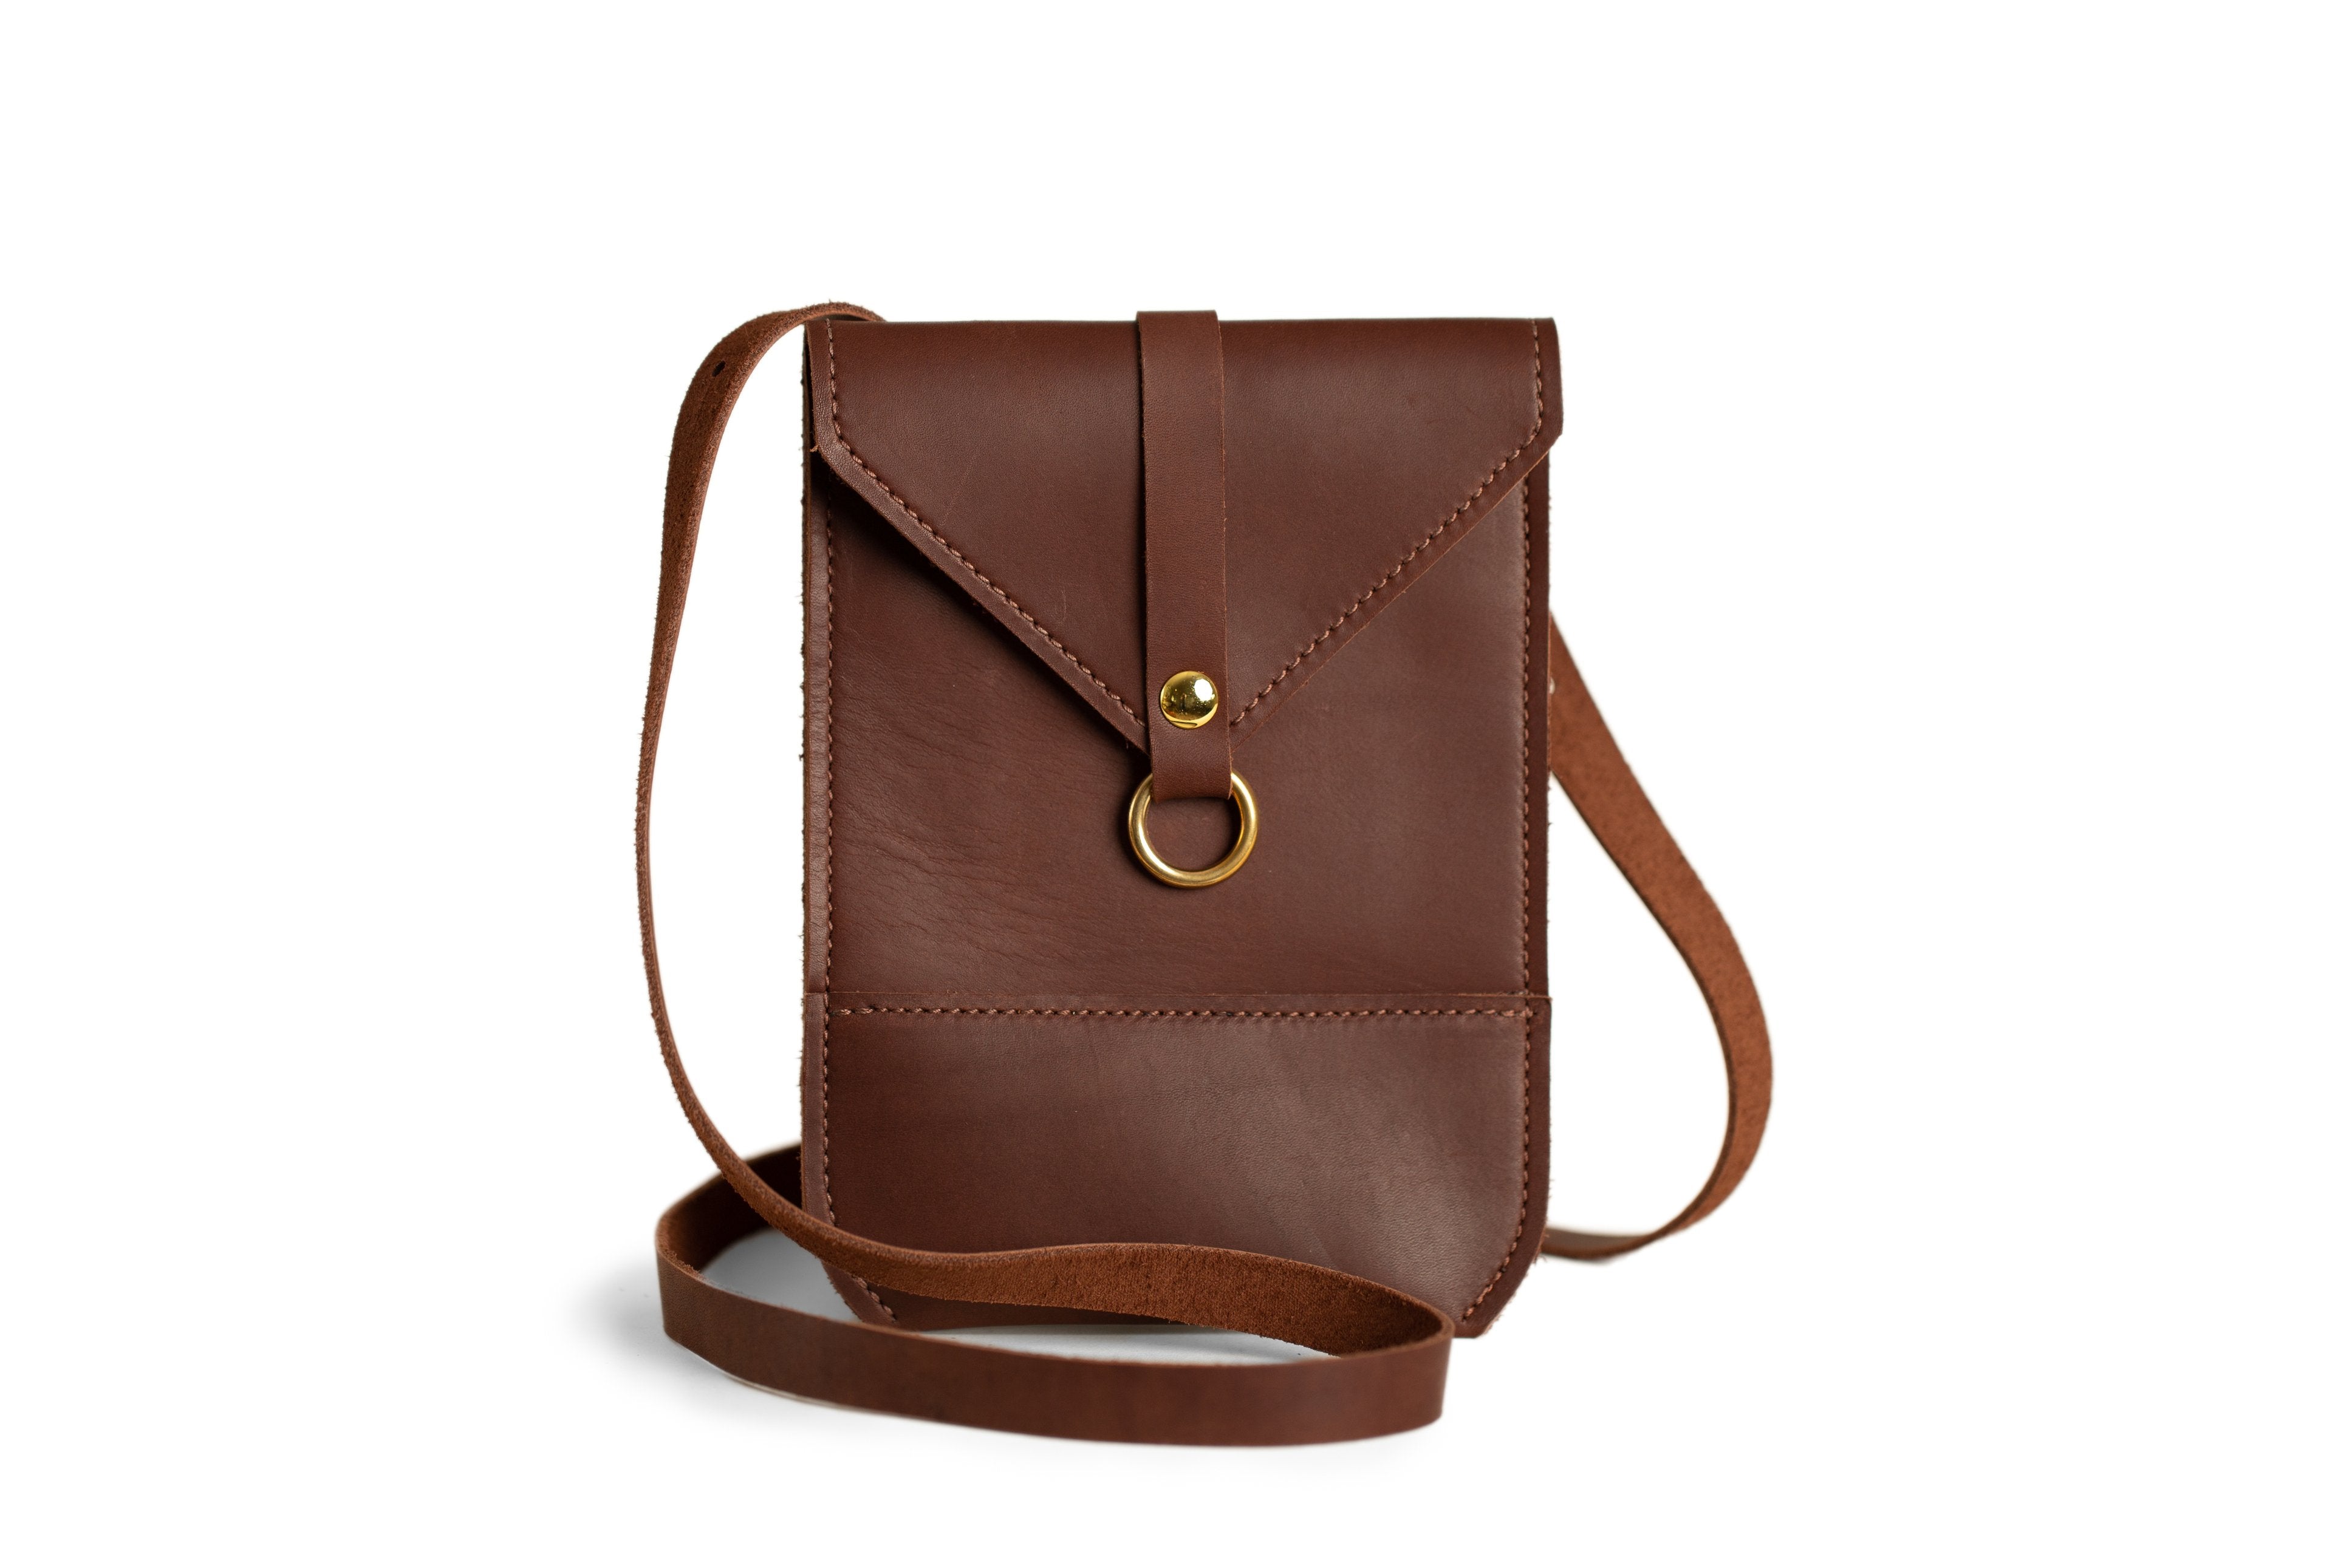 Buy Women's Brown Across The Body Bags Online